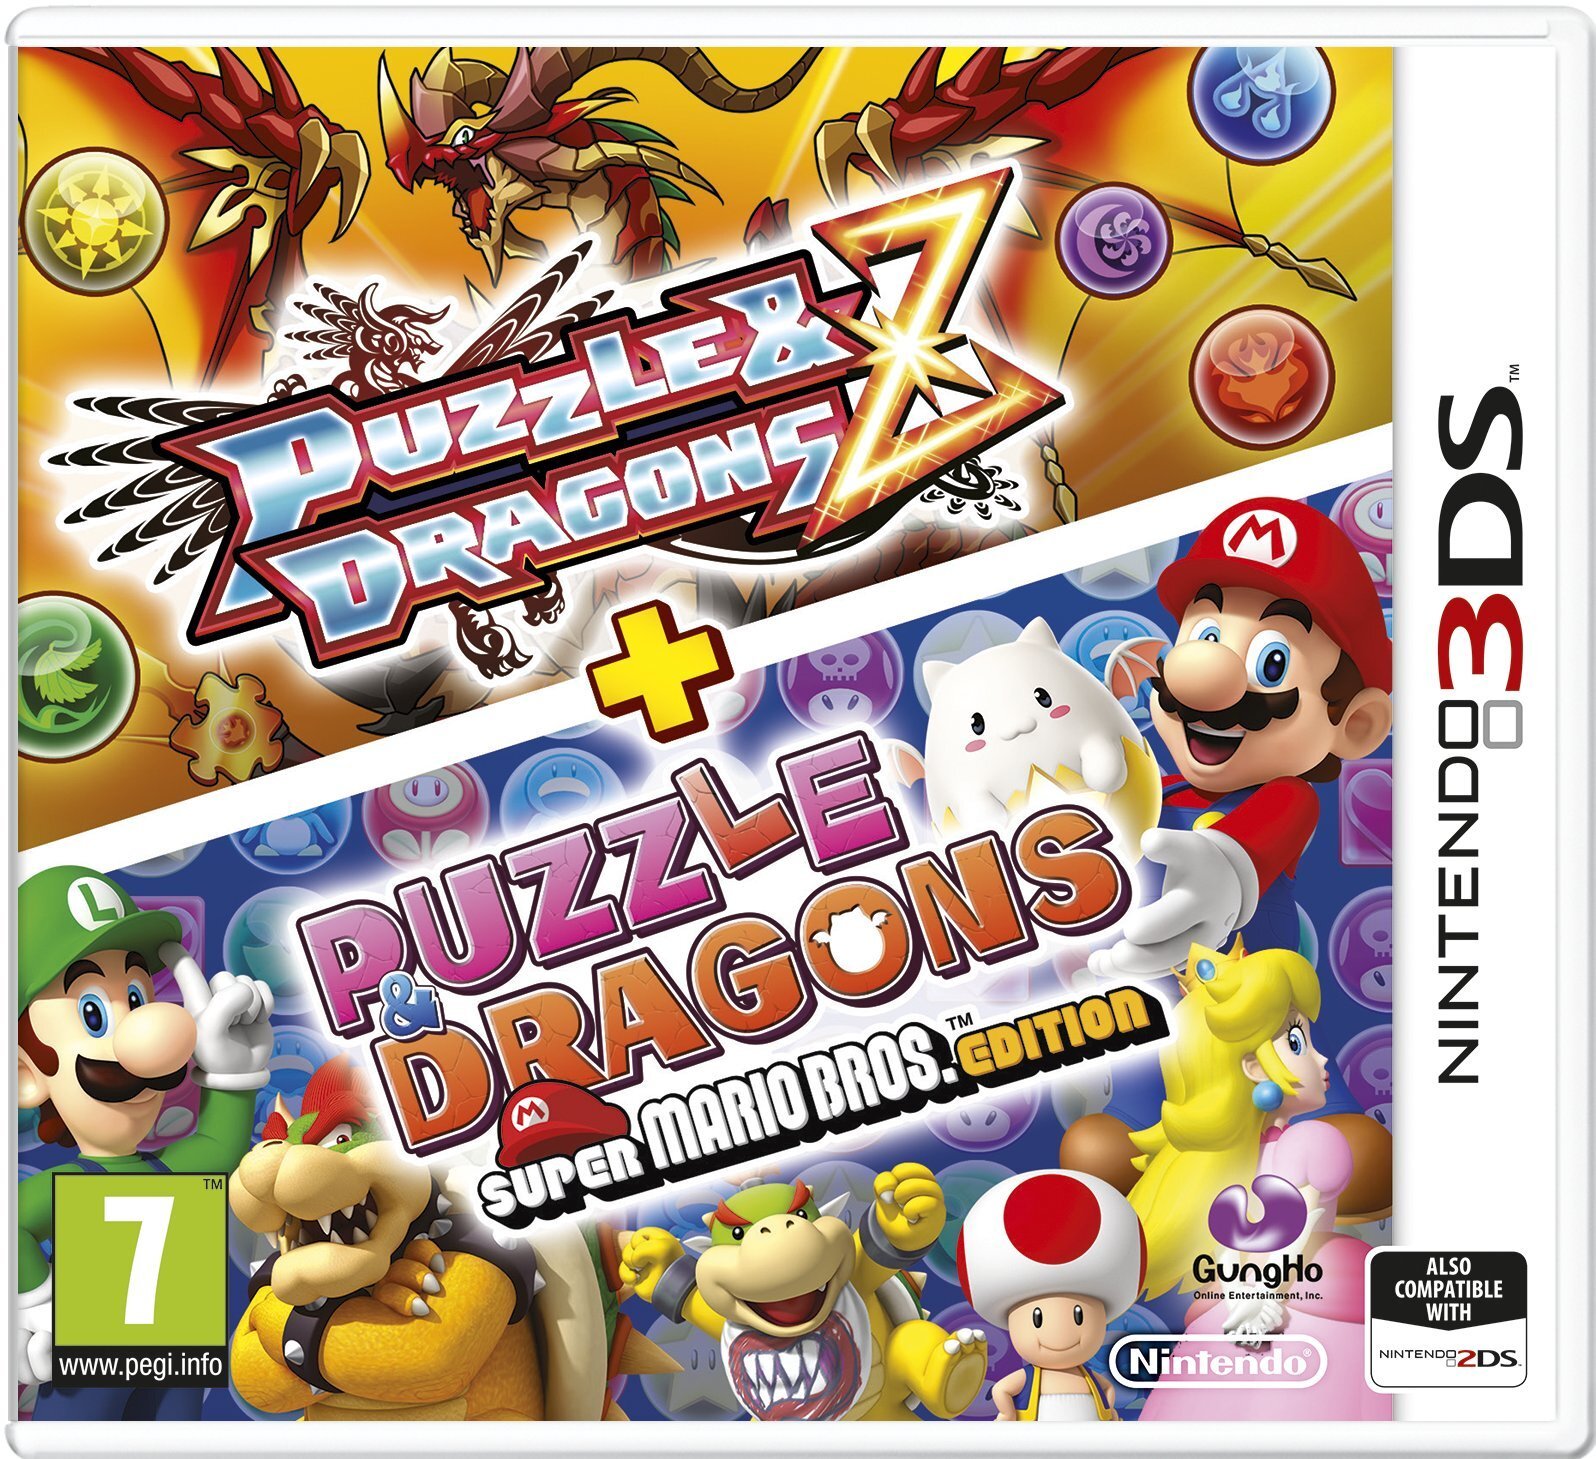 Nintendo Puzzle & Dragons Z + Puzzle & Dragons Super Mario Bros. Edition (3DS